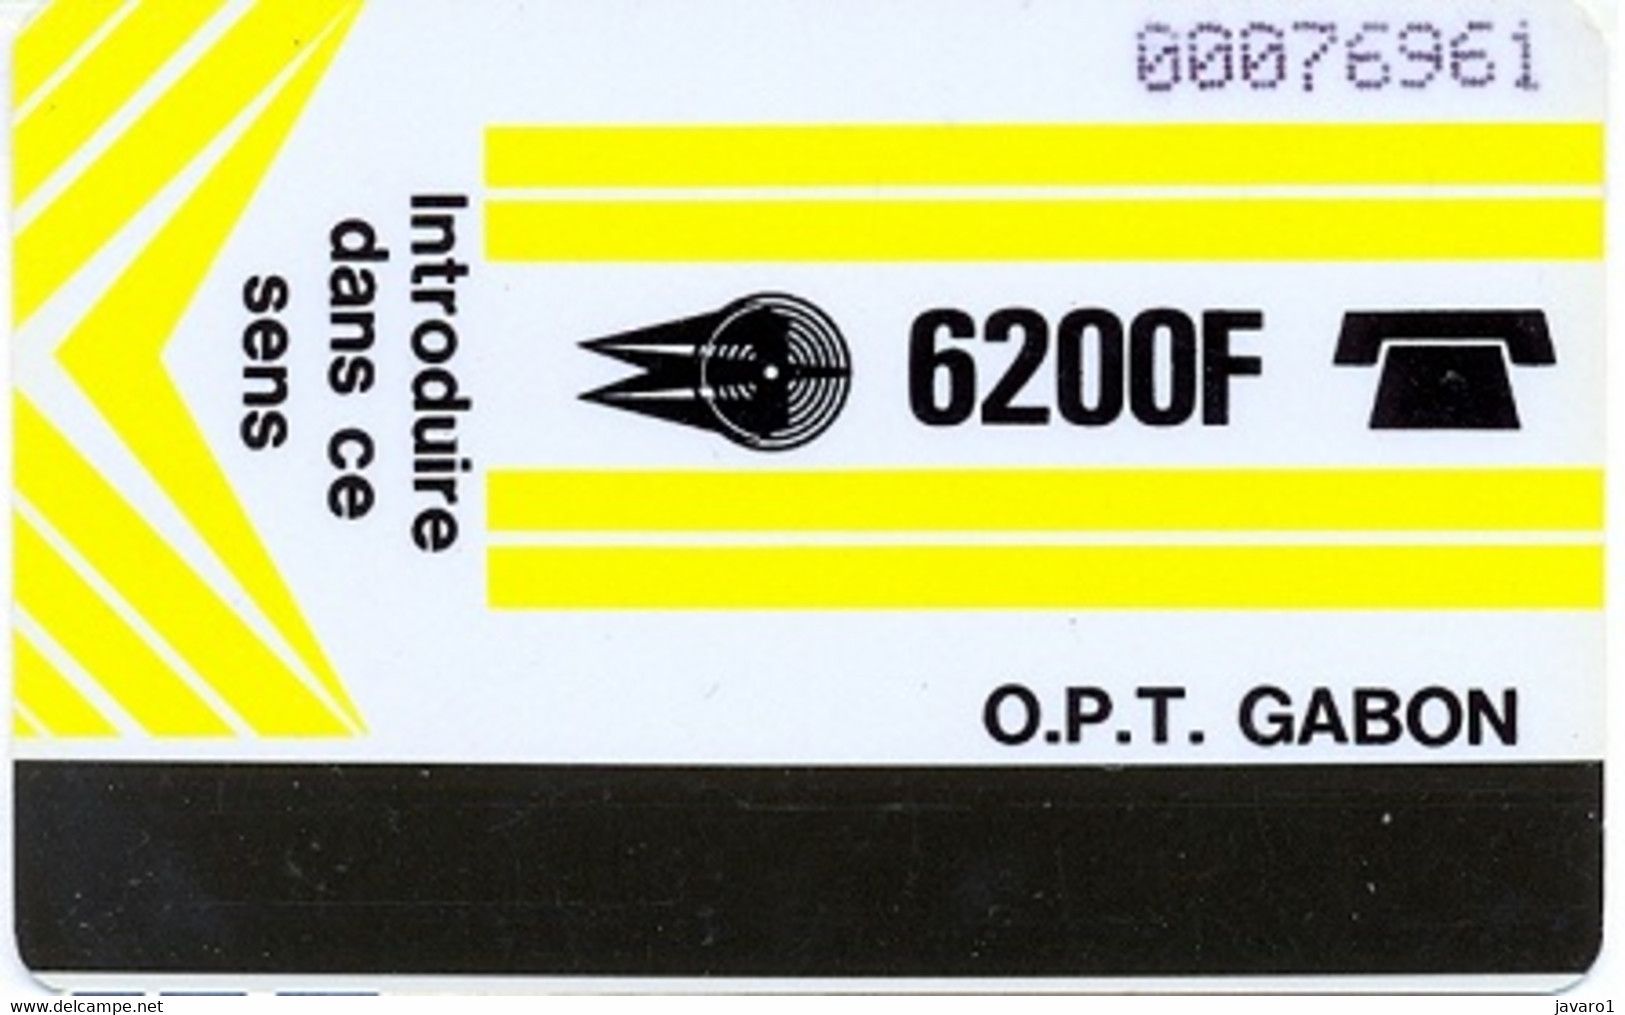 GABON : GAB04A 6200 F, Rev.= (SCORE)slashed 0 USED - Gabun